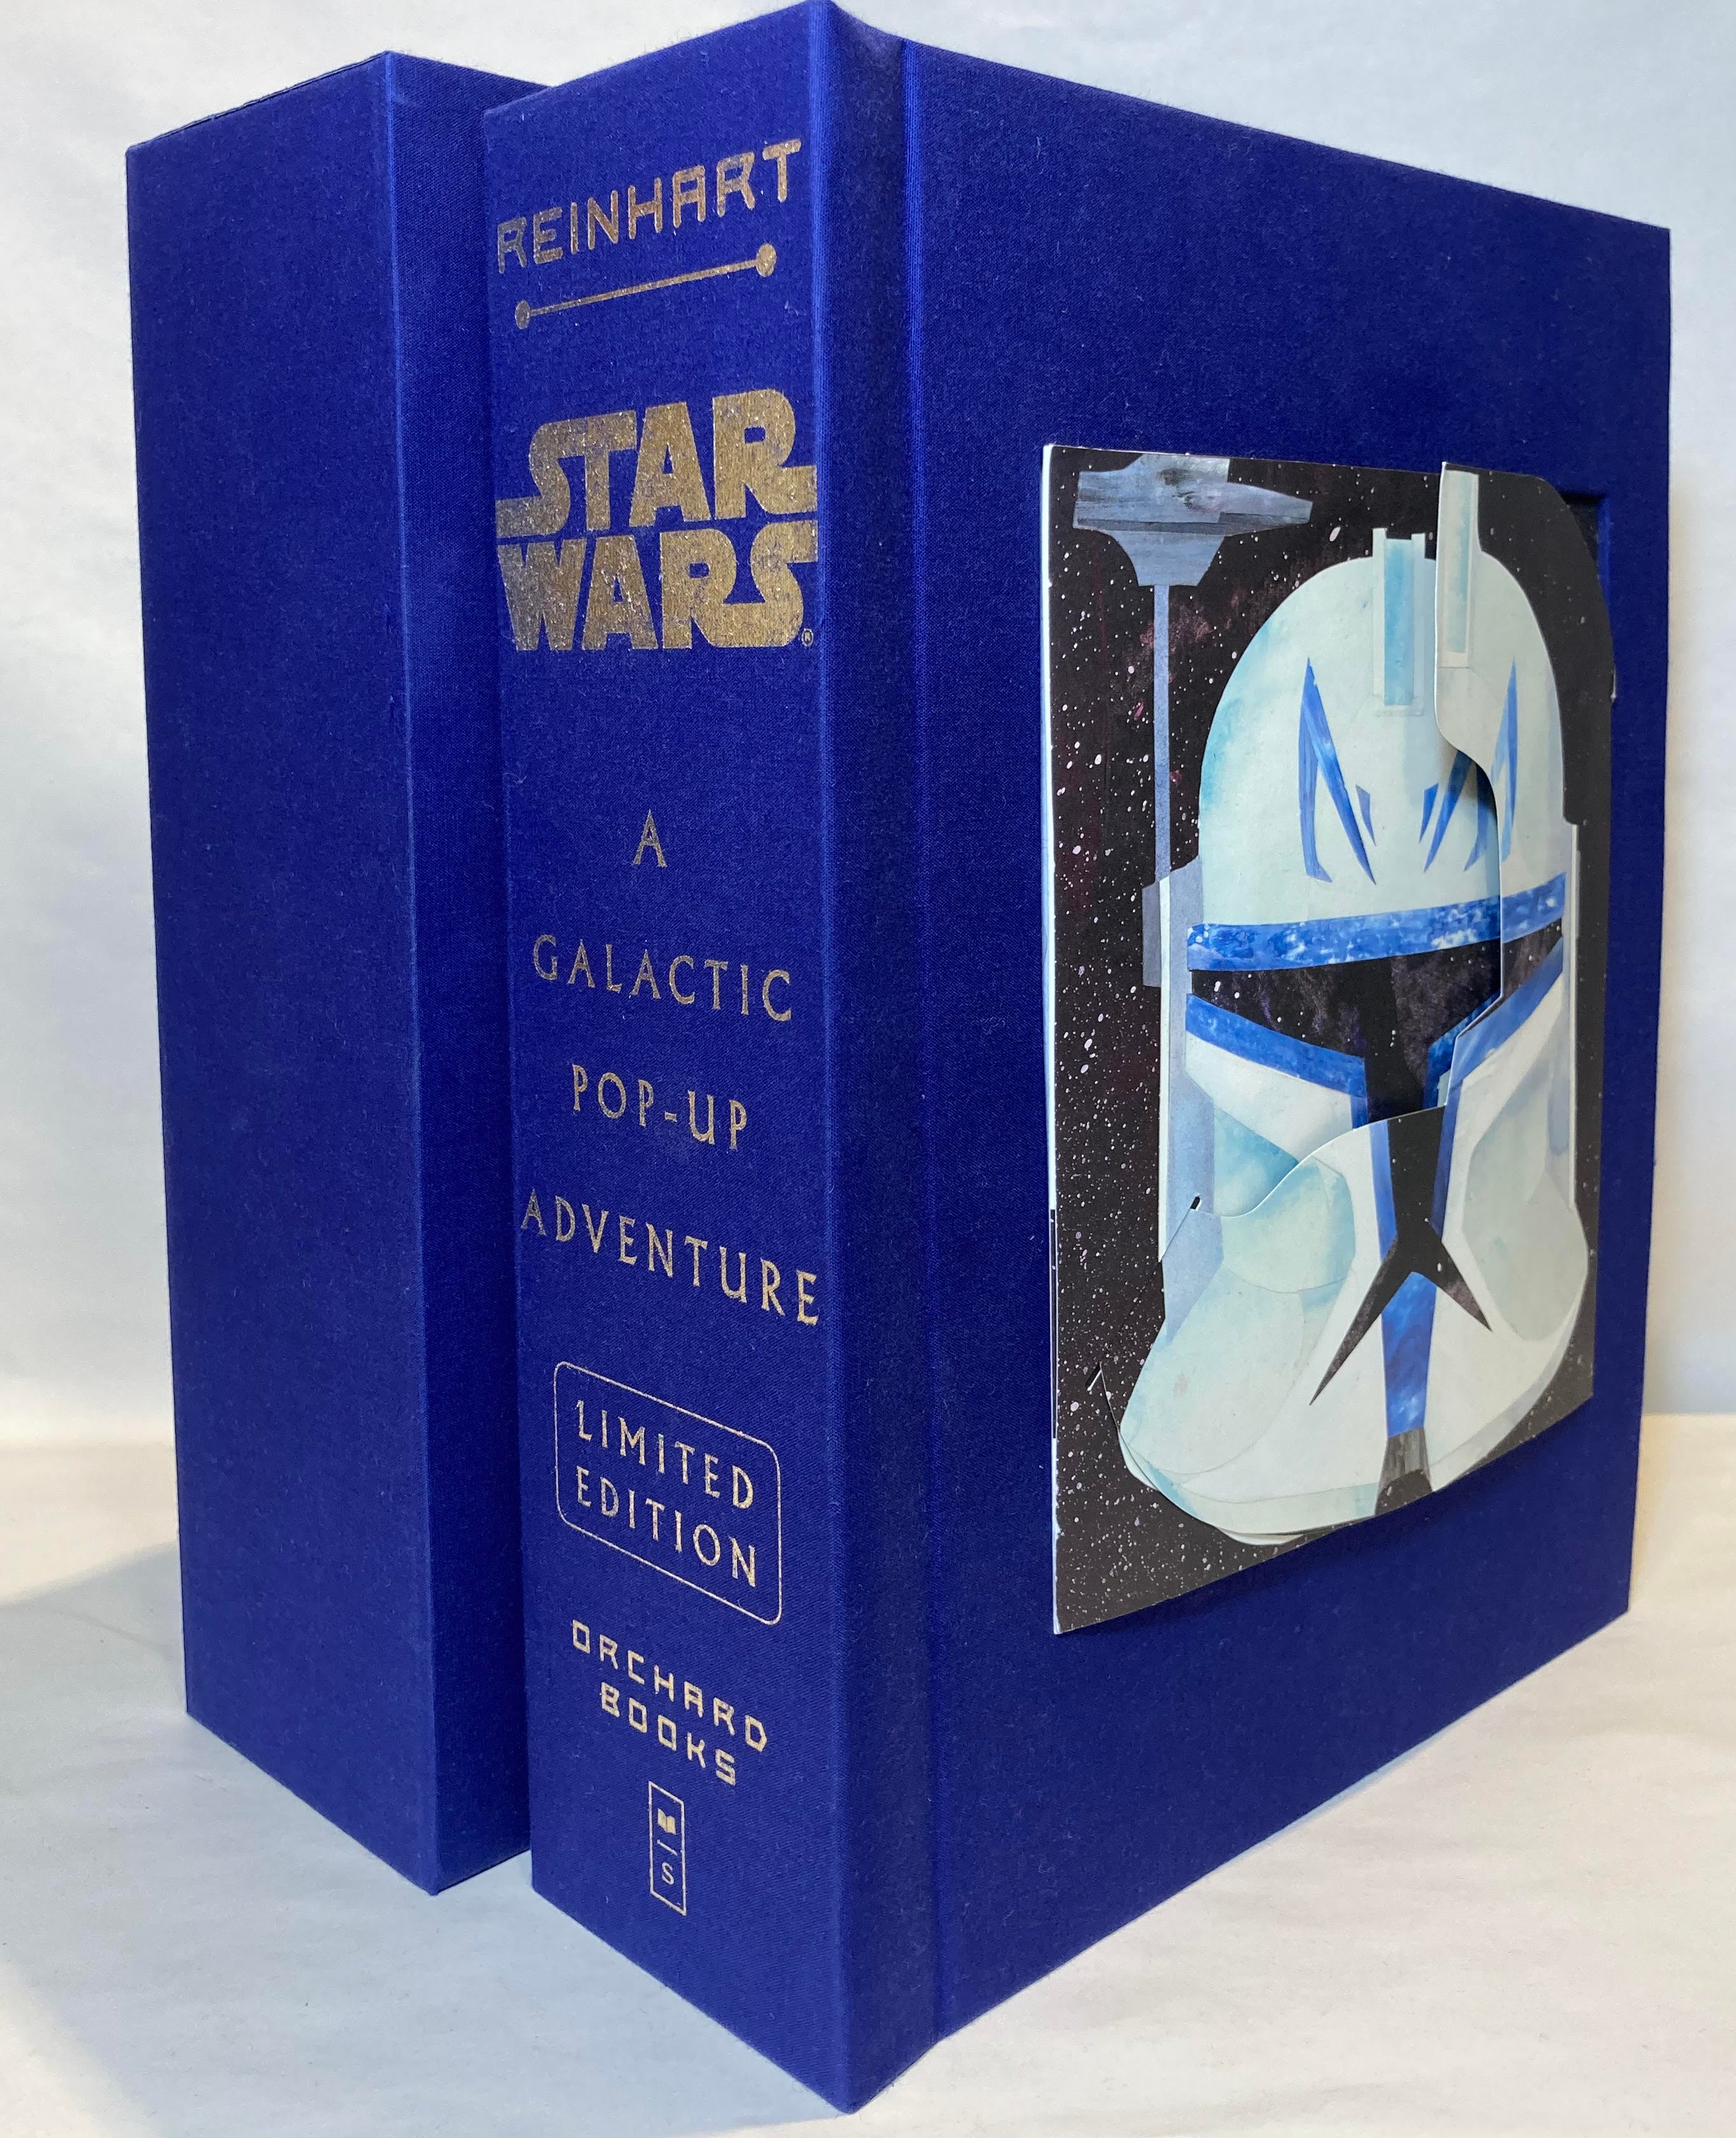 Star Wars: A Galactic Pop-up Adventure - Reinhart, Matthew; Lucasfilm;  Lucasfilm Ltd.: 9780545176163 - AbeBooks